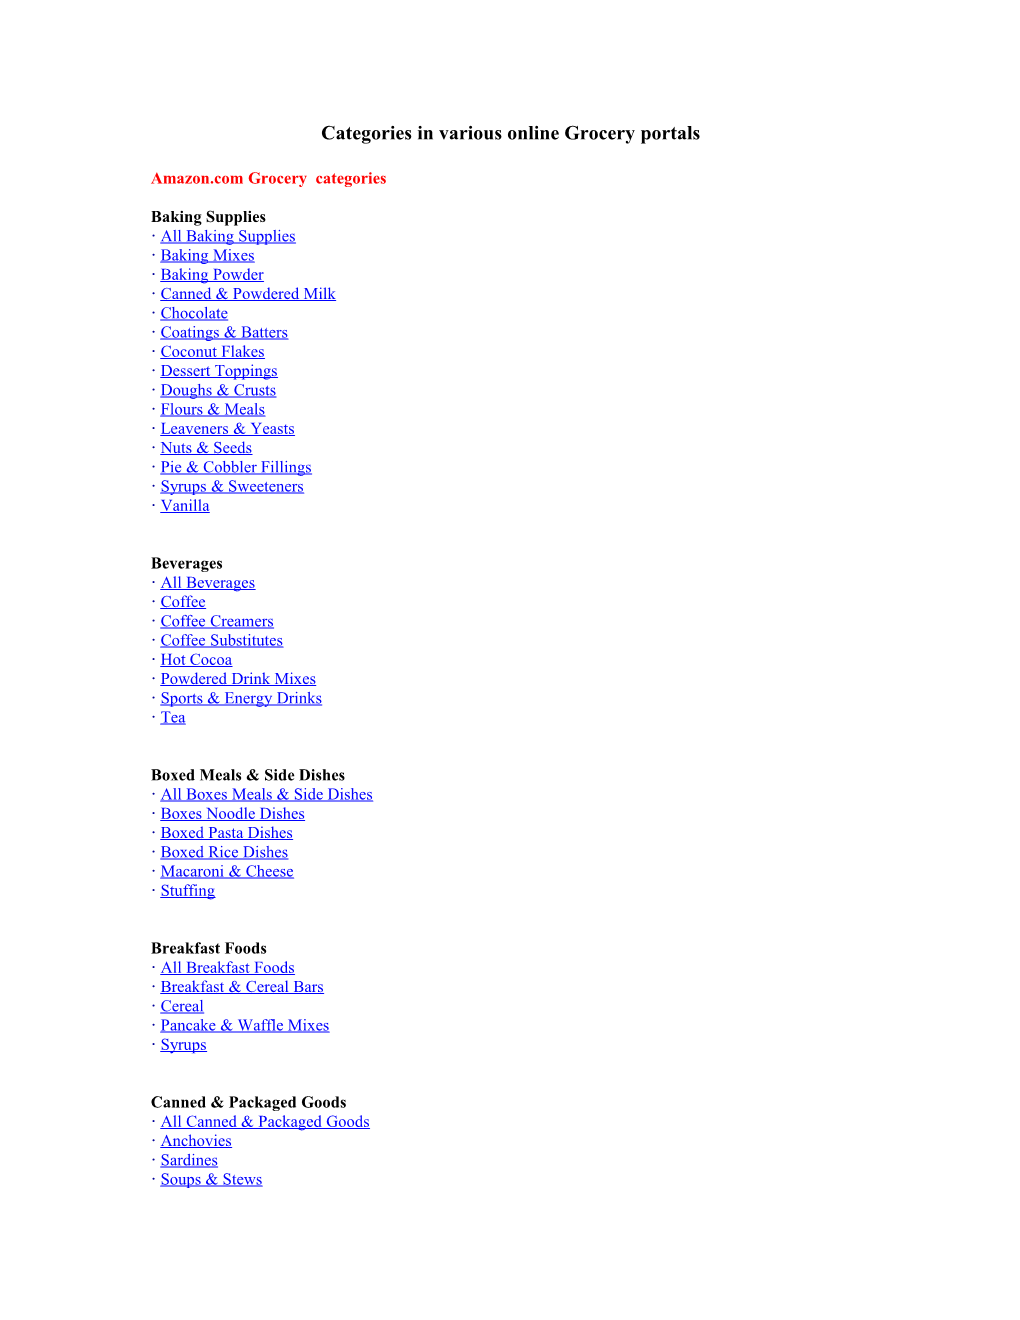 Categories in Various Online Grocery Portals